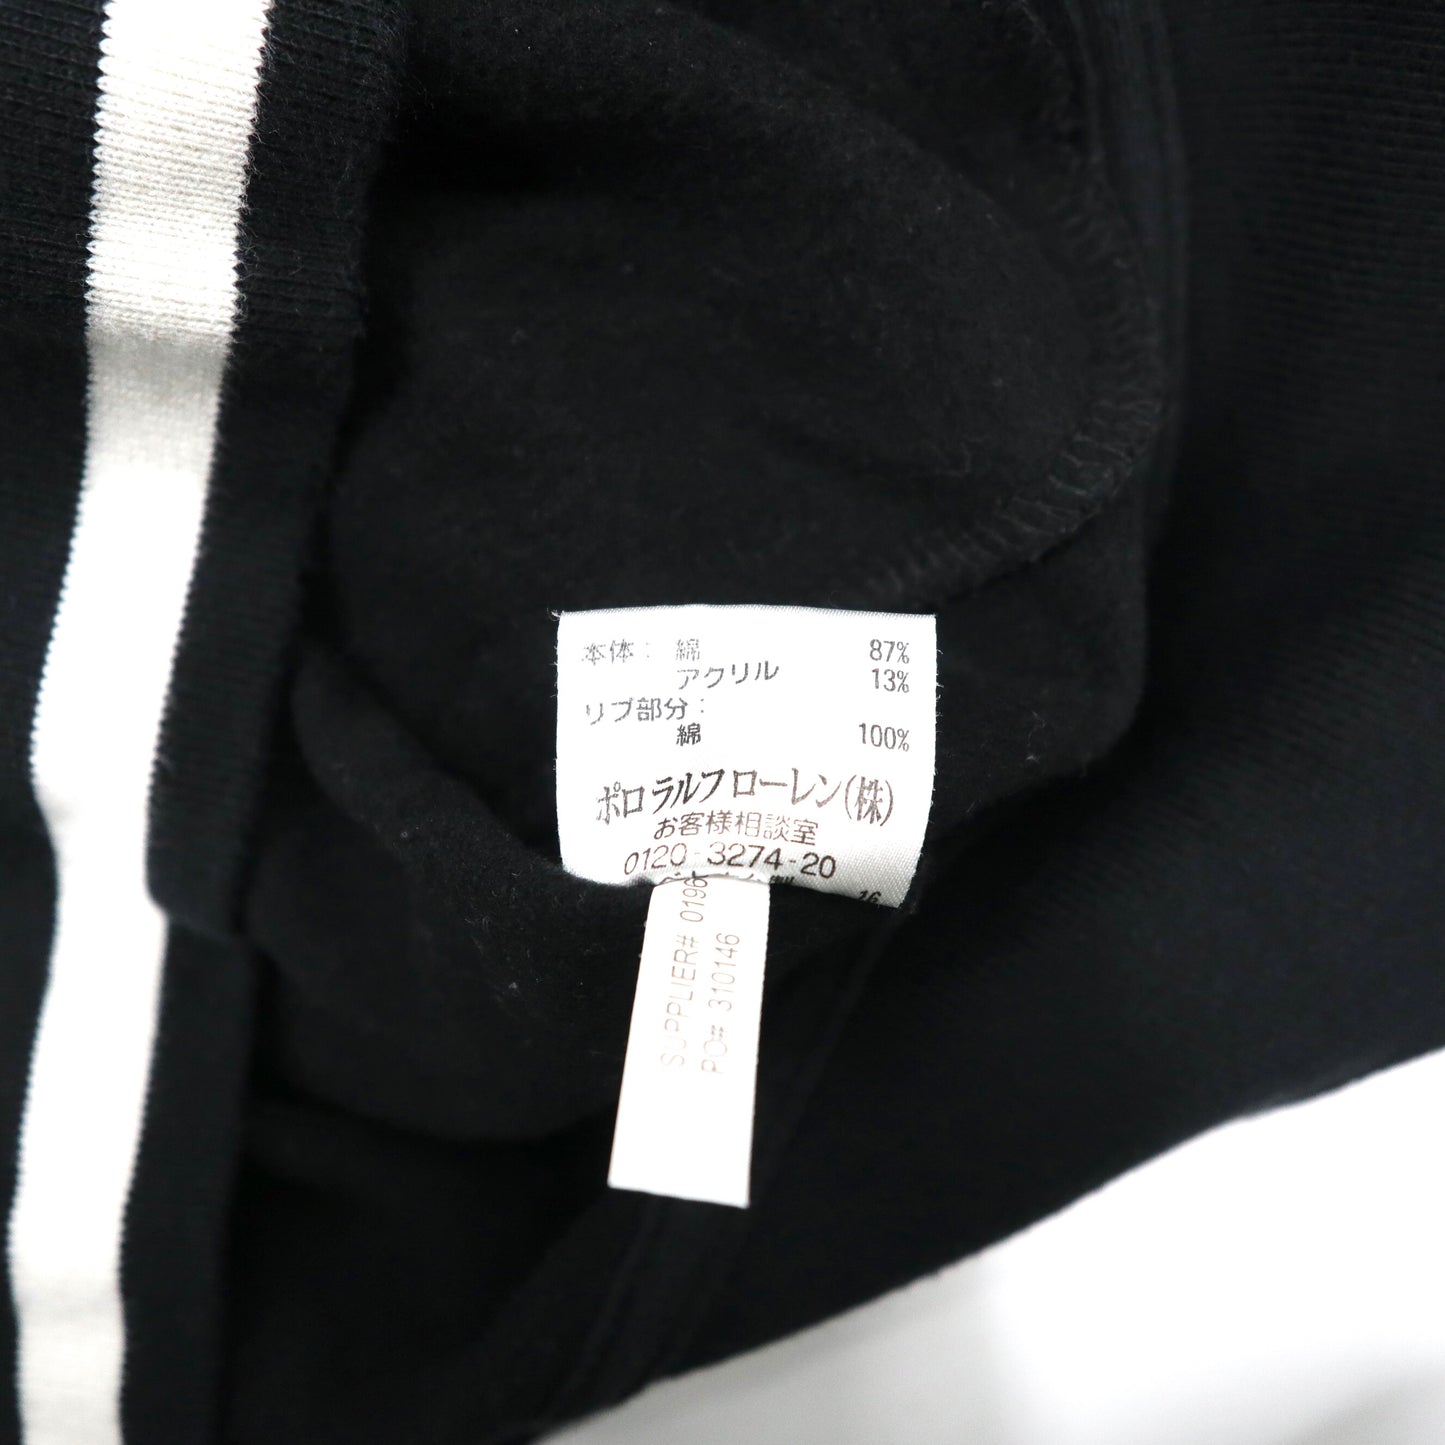 Polo by Ralph Lauren フルジップスウェットジャケット M ブラック コットン 裏起毛 リブライン スモールポニー刺繍